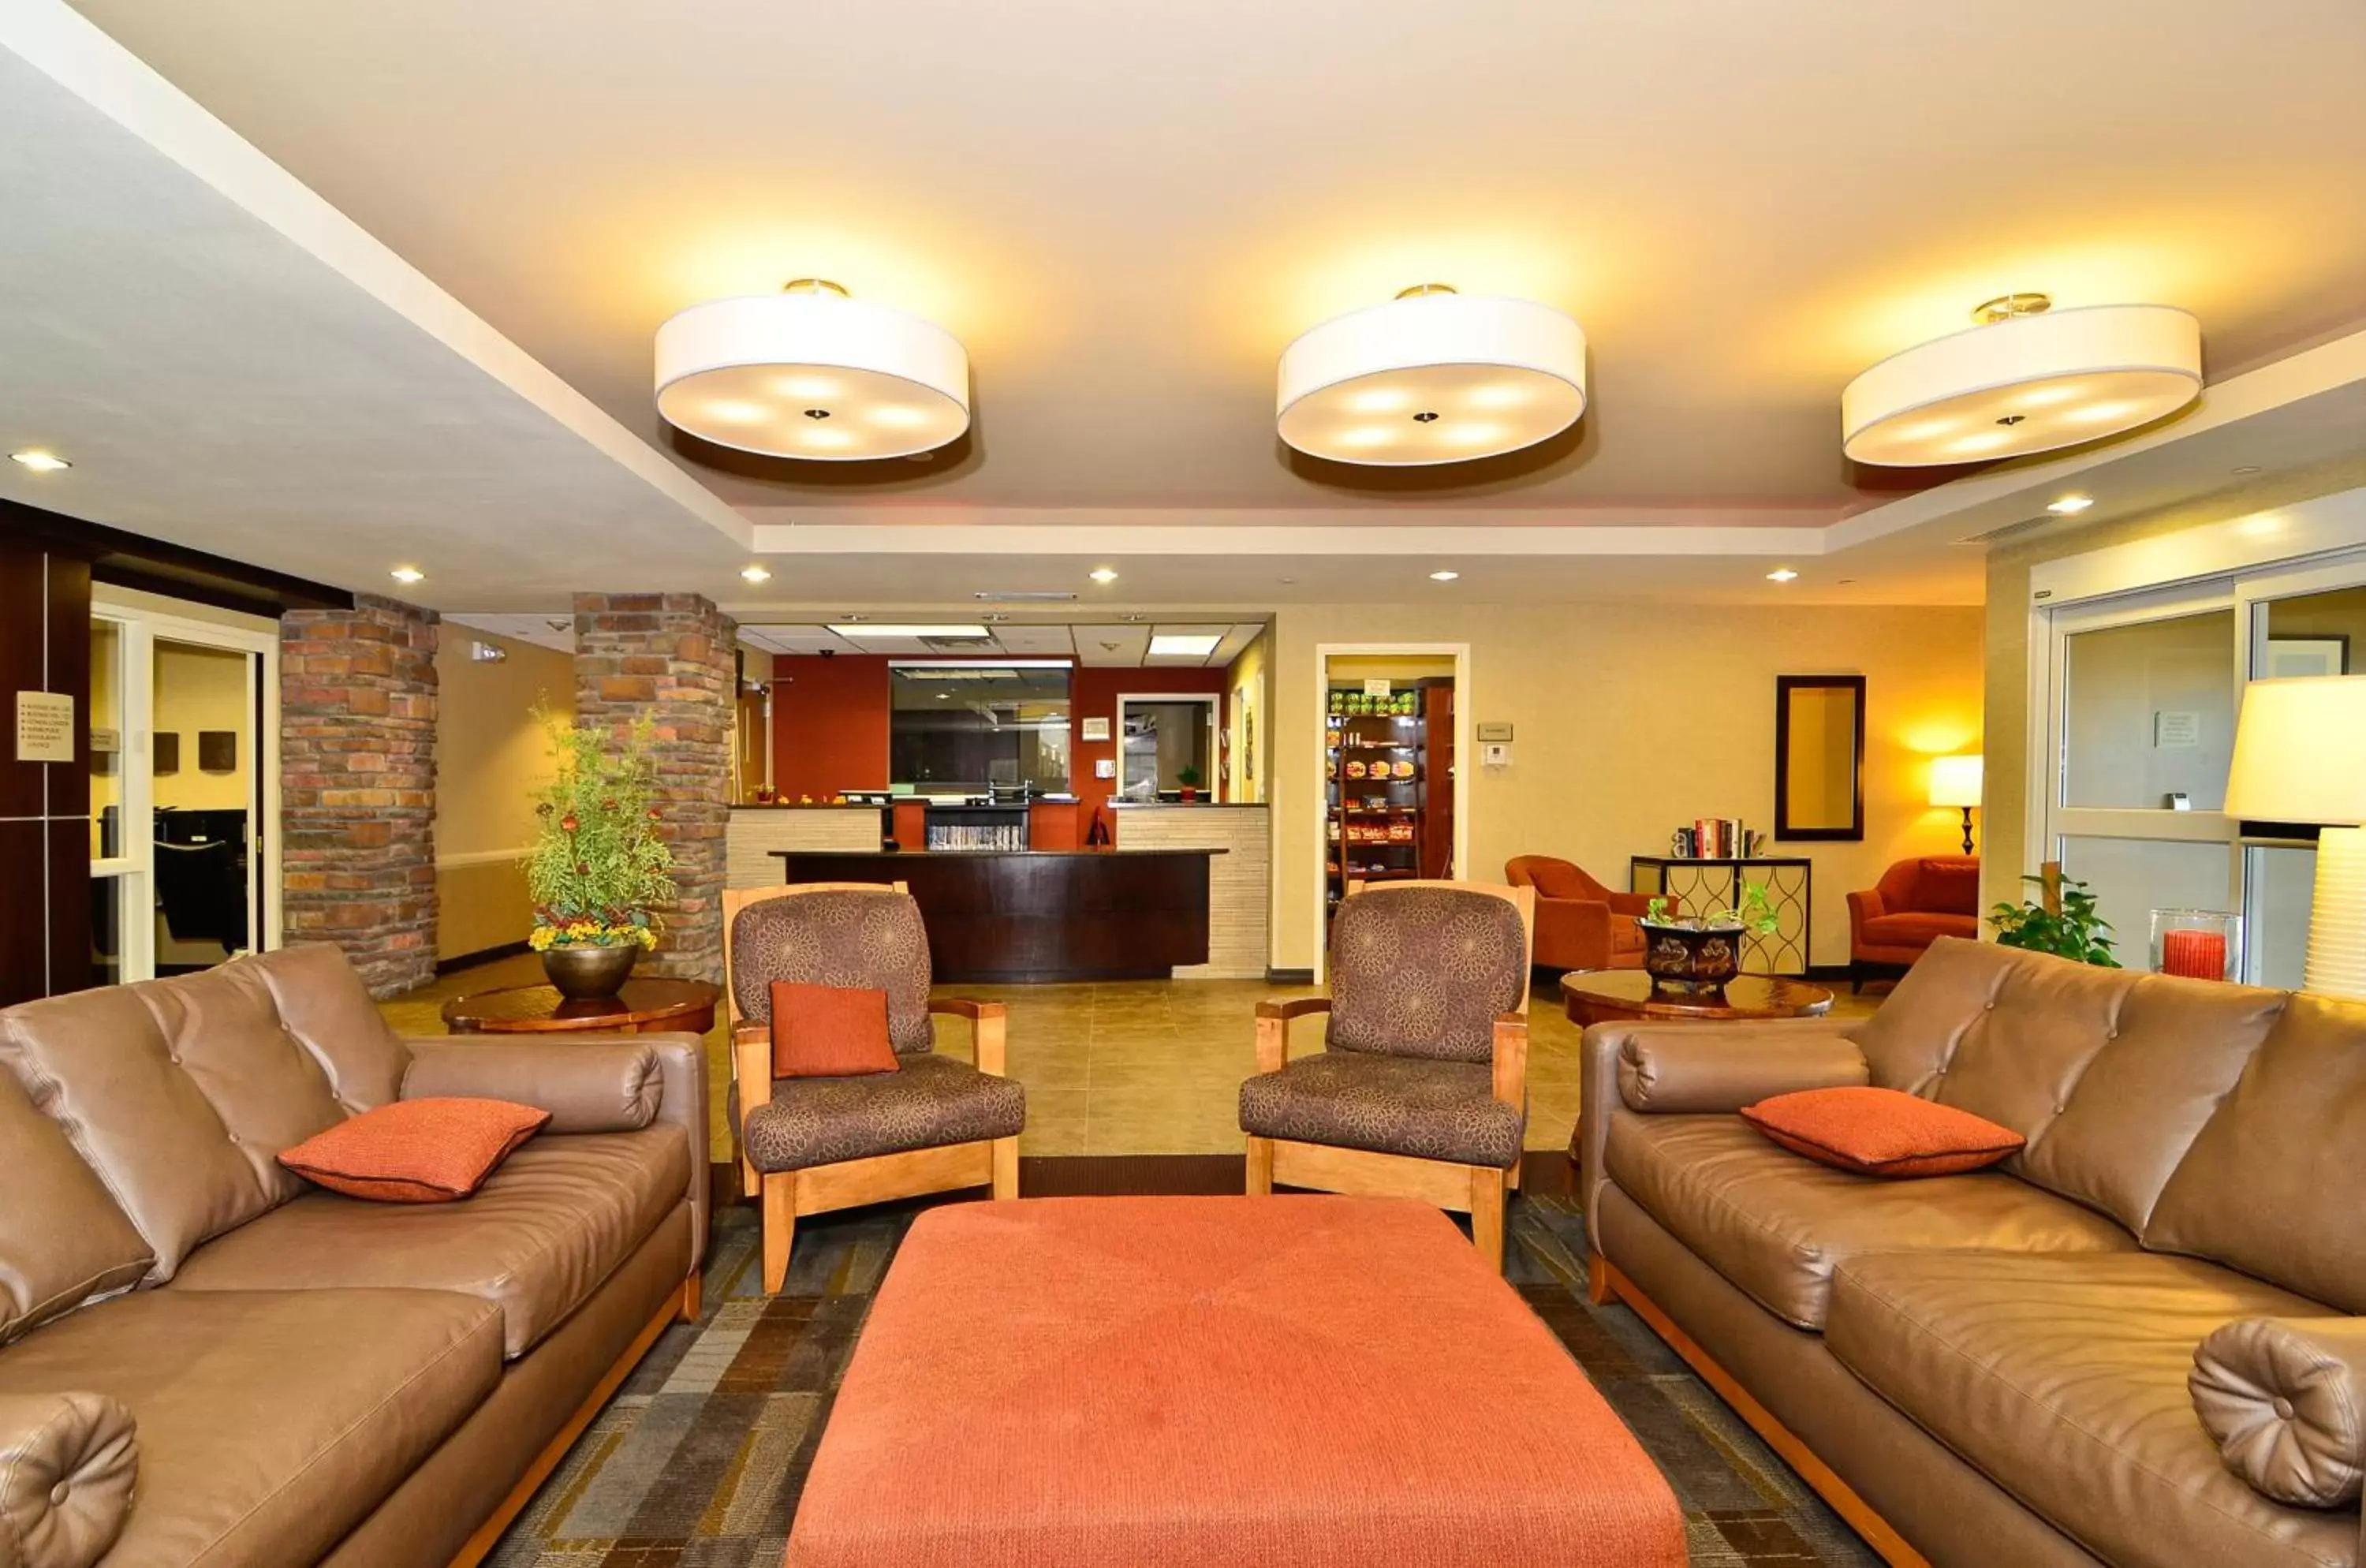 Lobby or reception, Lobby/Reception in Hawthorn Suites by Wyndham Williston